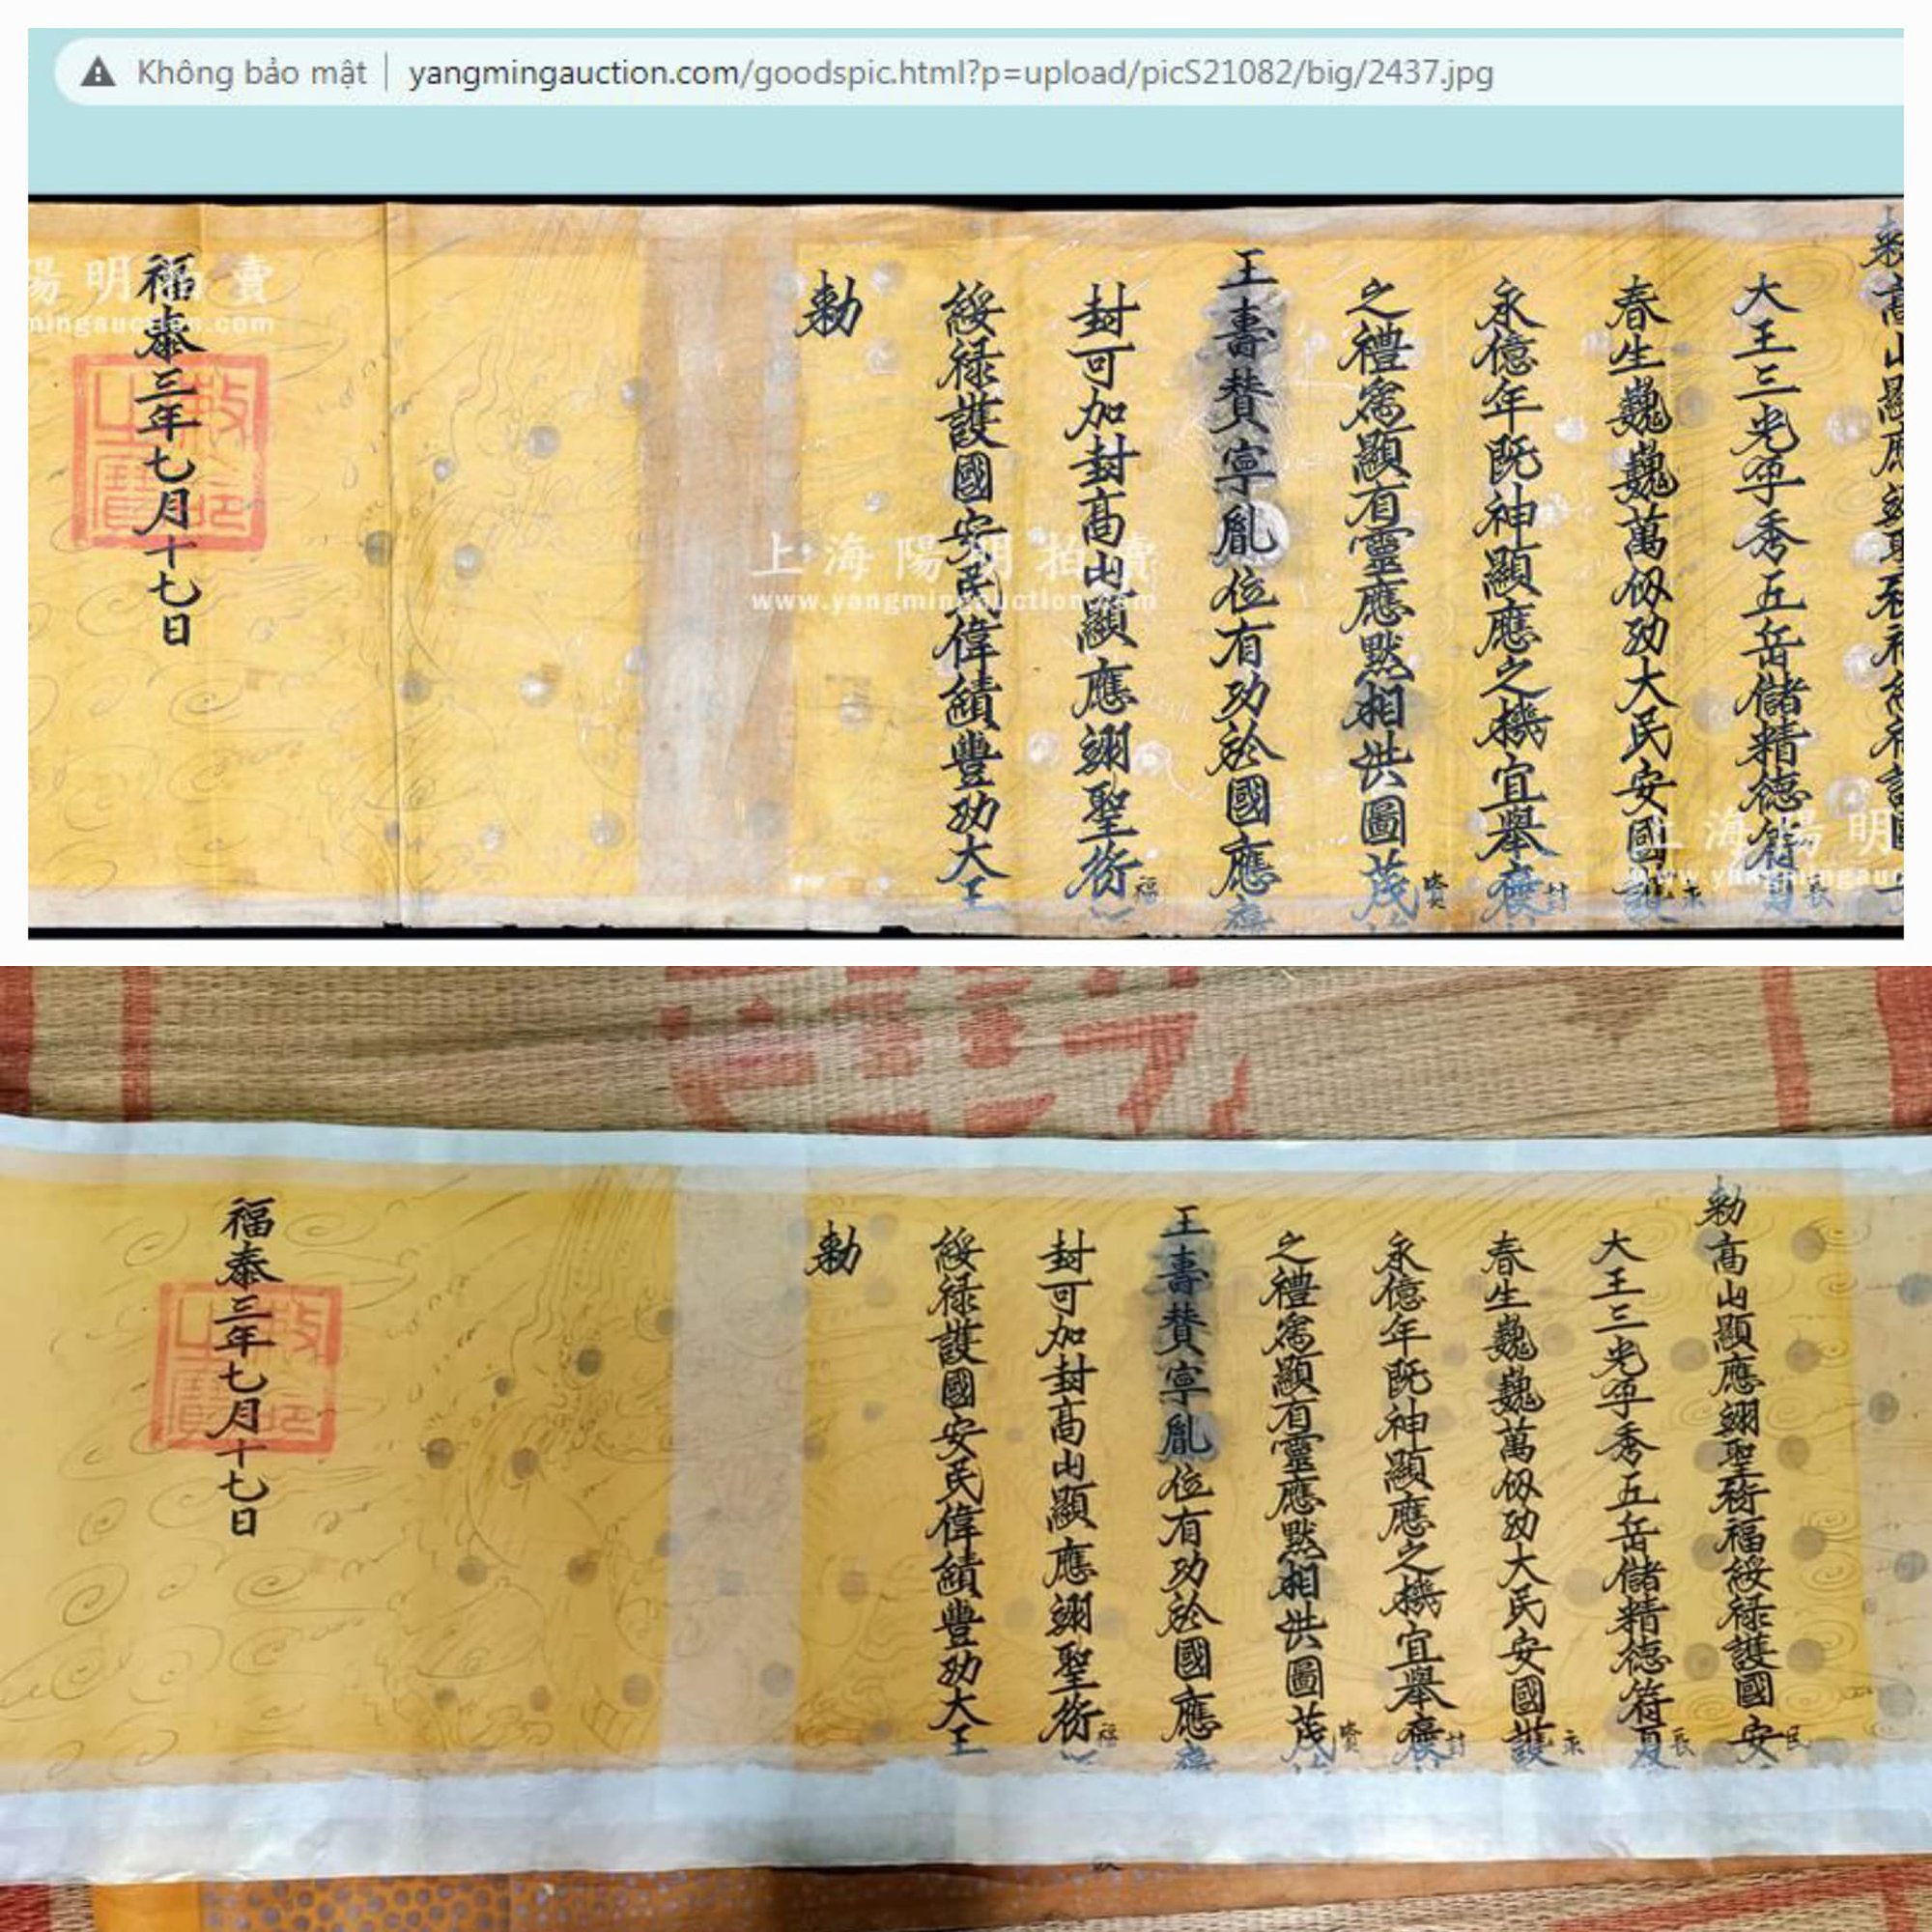  Trang đấu giá Trung Quốc bất ngờ xóa sạch thông tin, hình ảnh rao bán sắc phong của Việt Nam  - Ảnh 2.